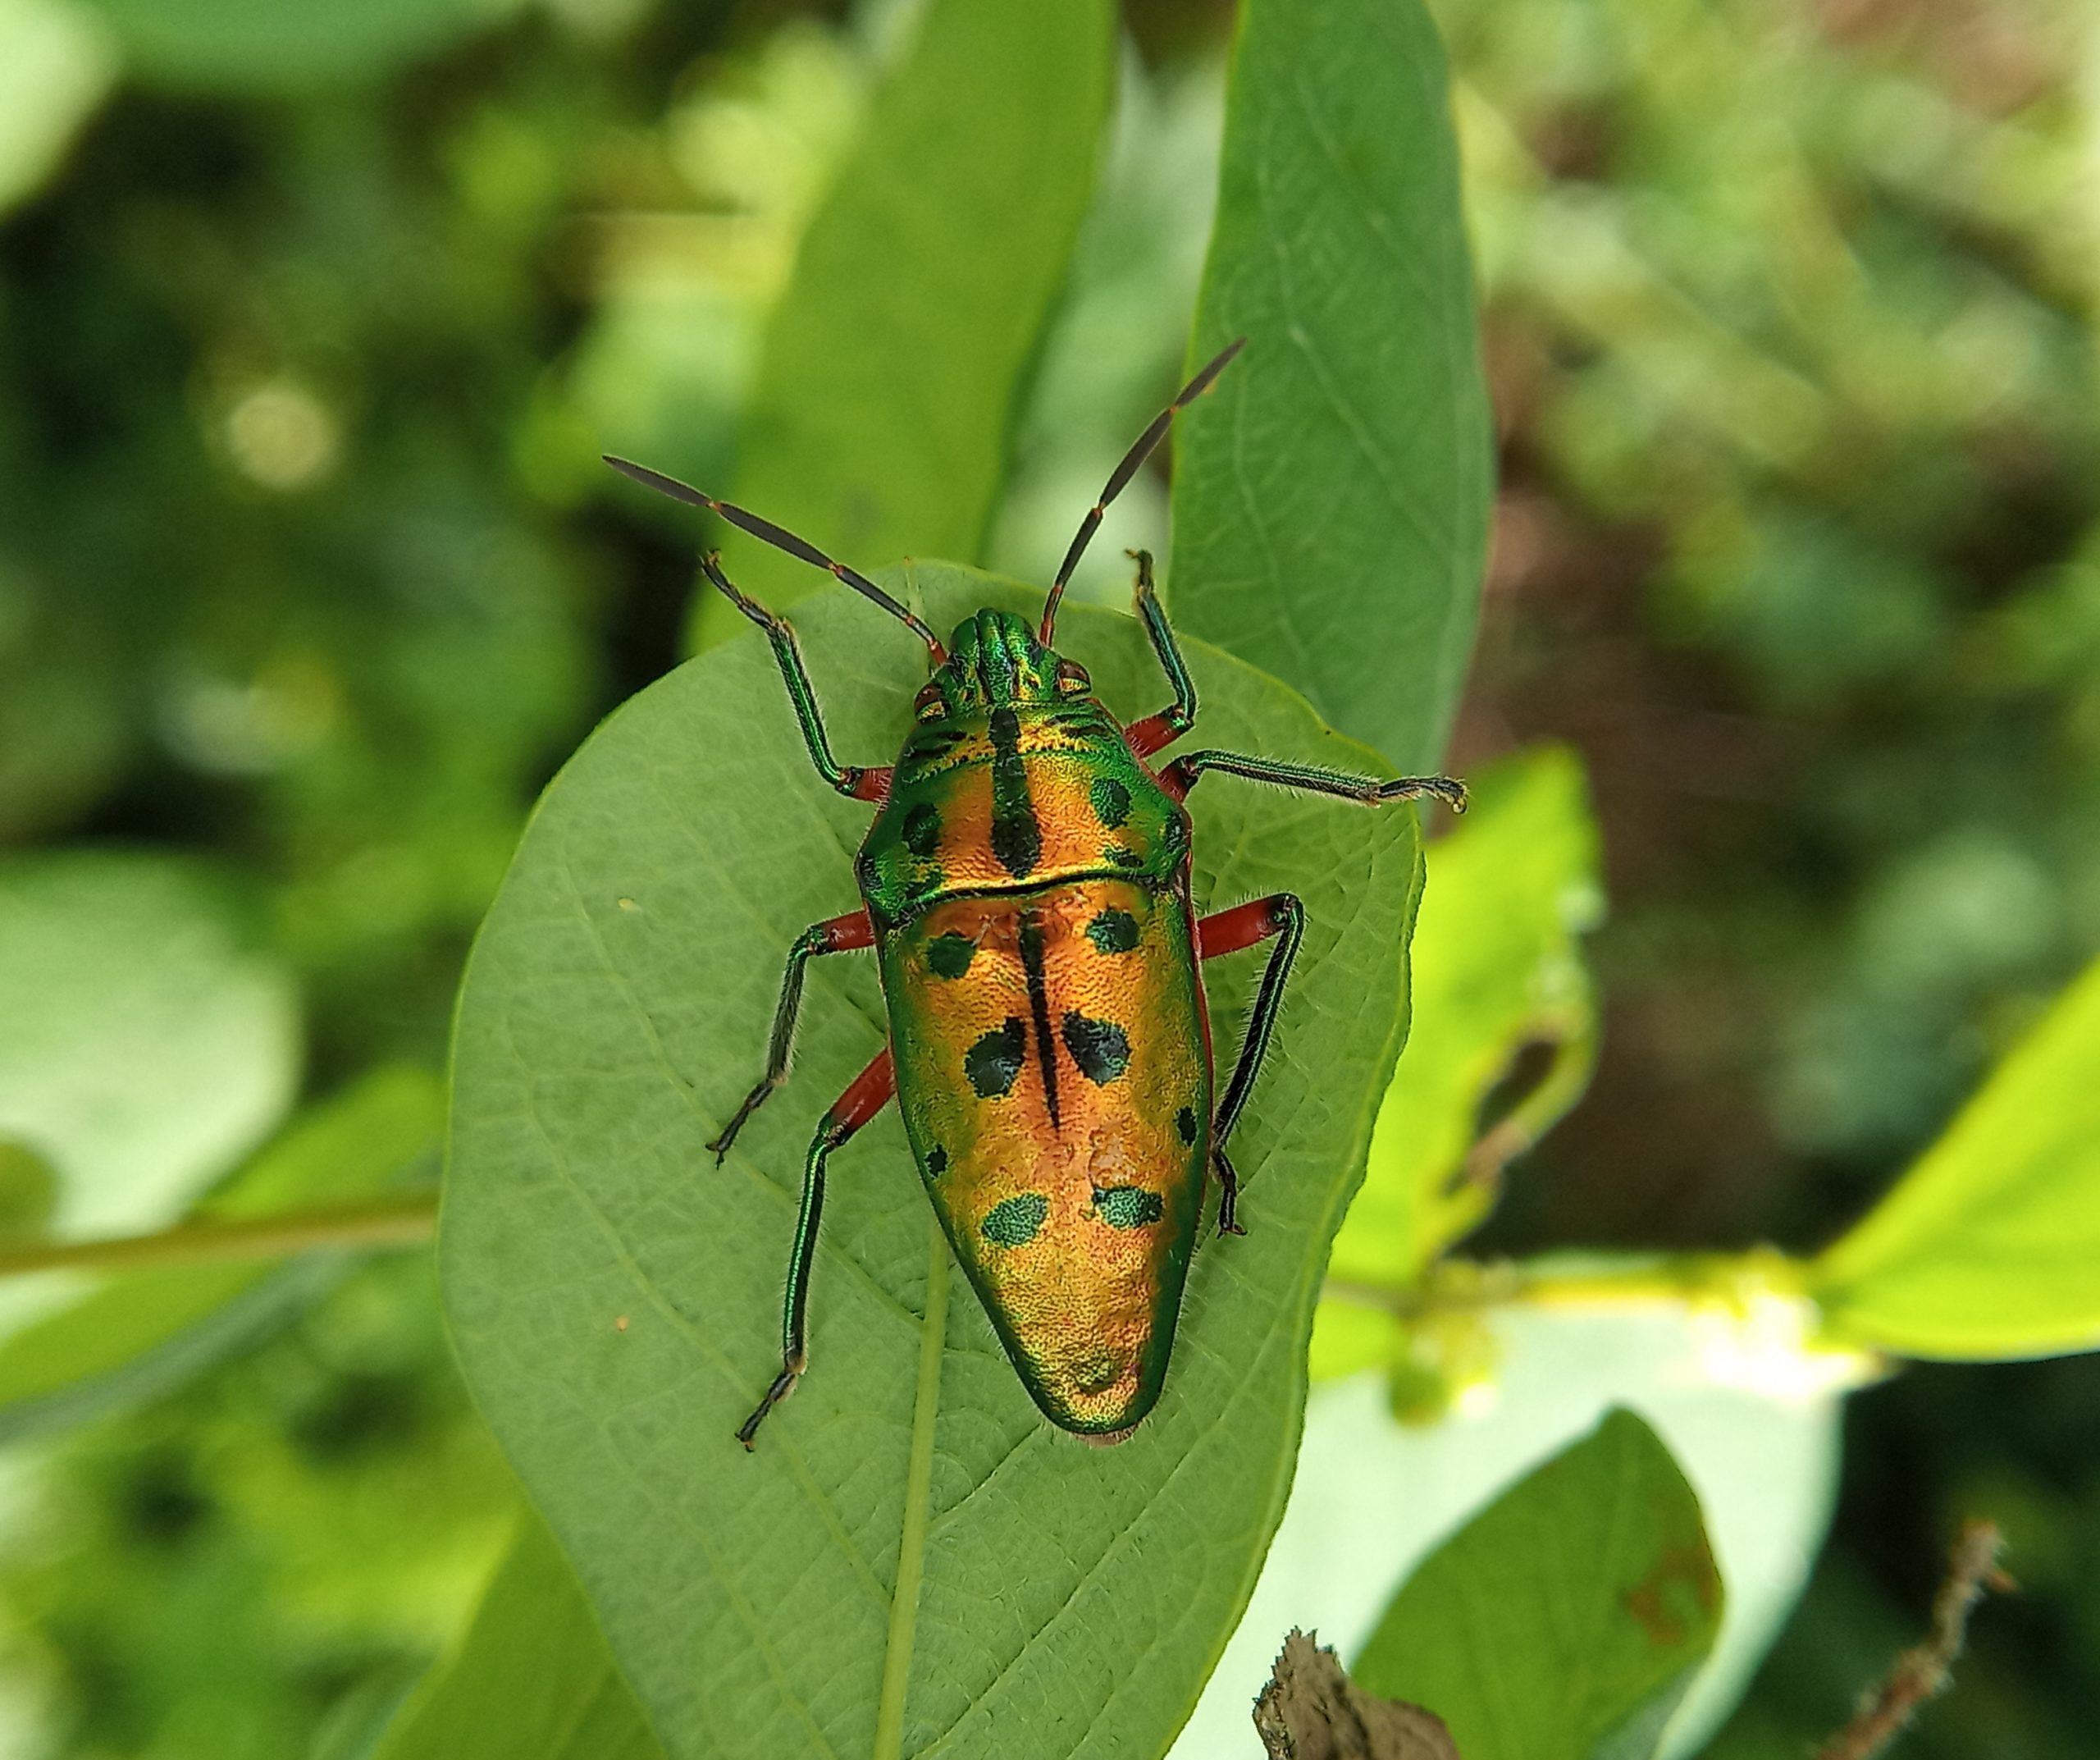 A jewel bug on a leaf